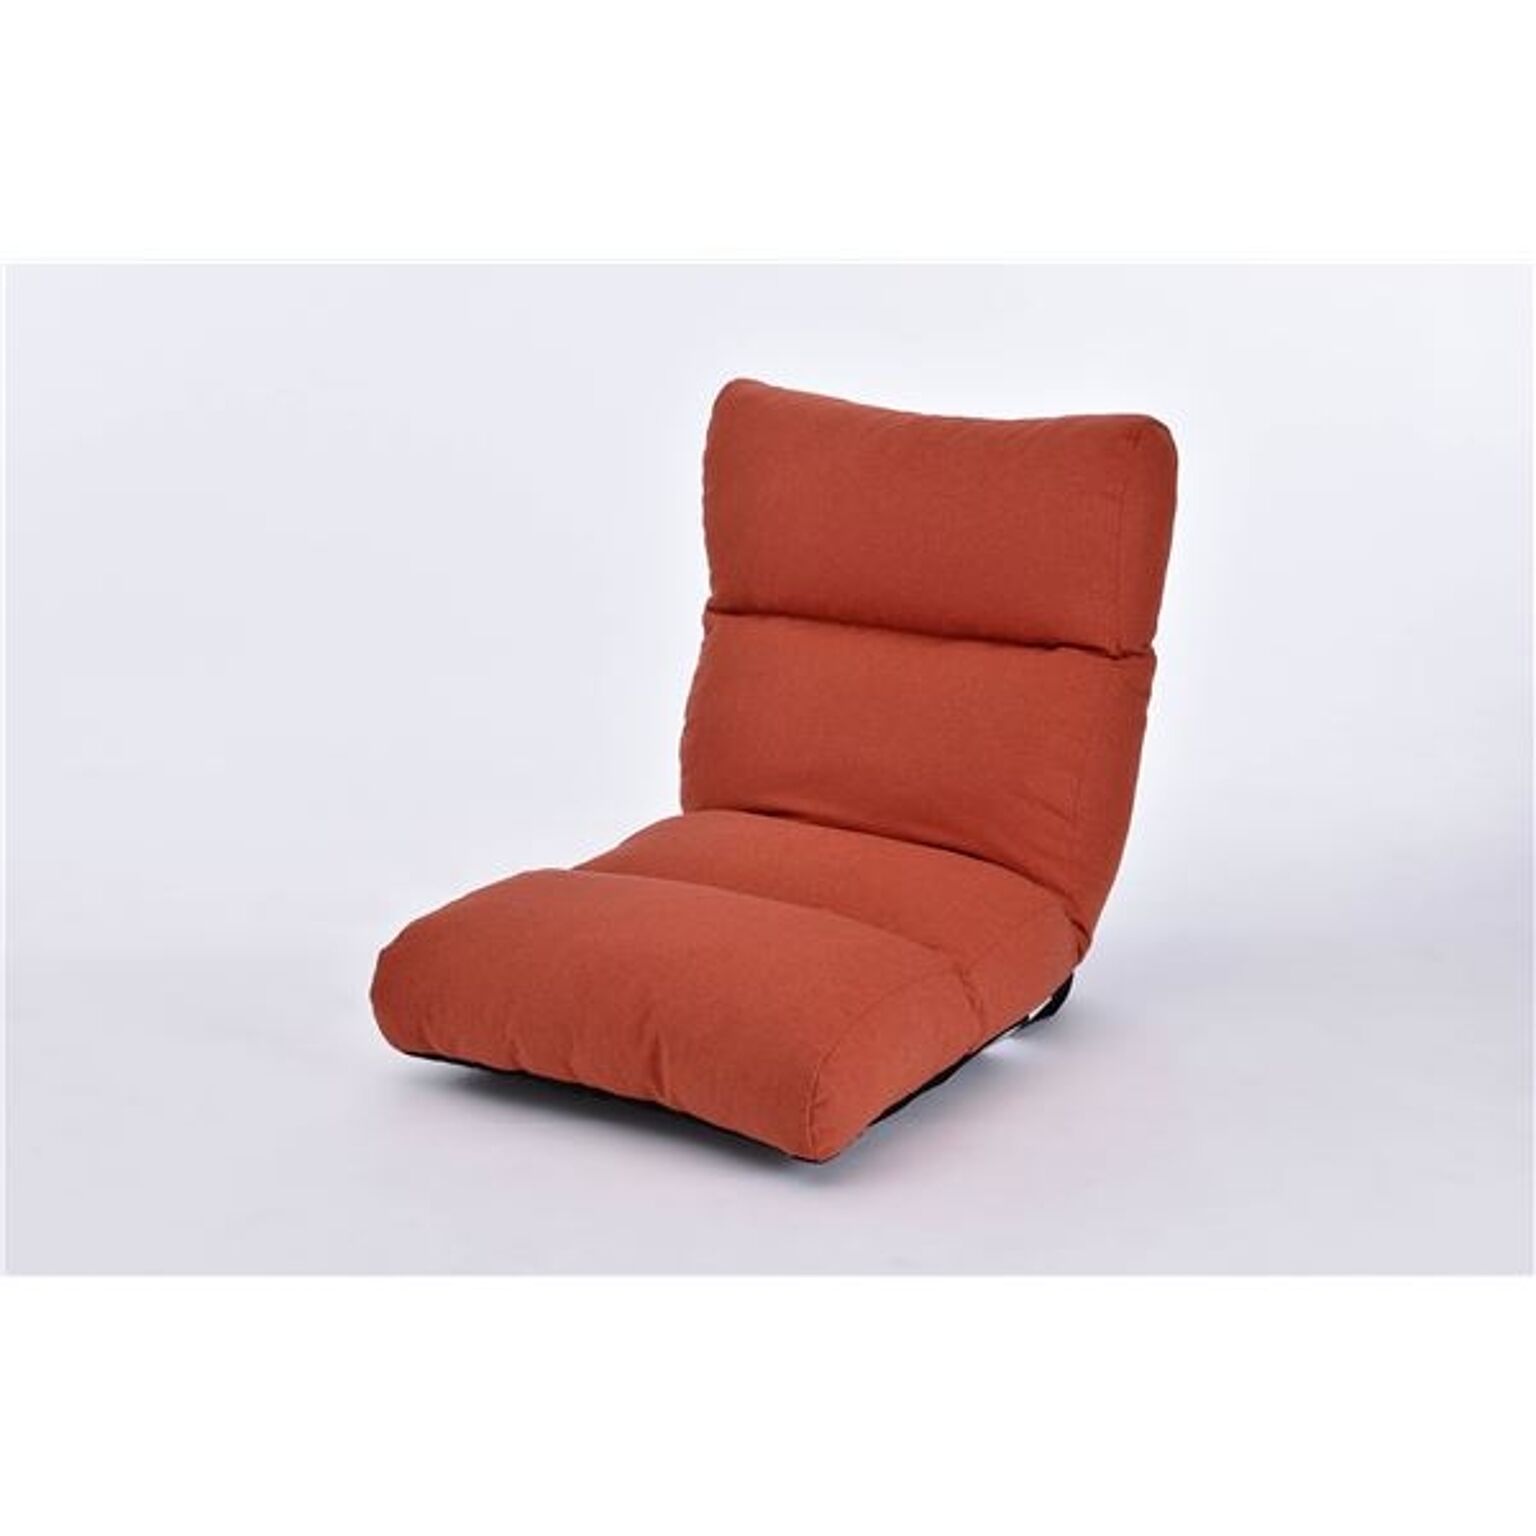 ふかふか座椅子 リクライニング ソファー 【ウォームレッド】 日本製 『KABUL-LT』【代引不可】